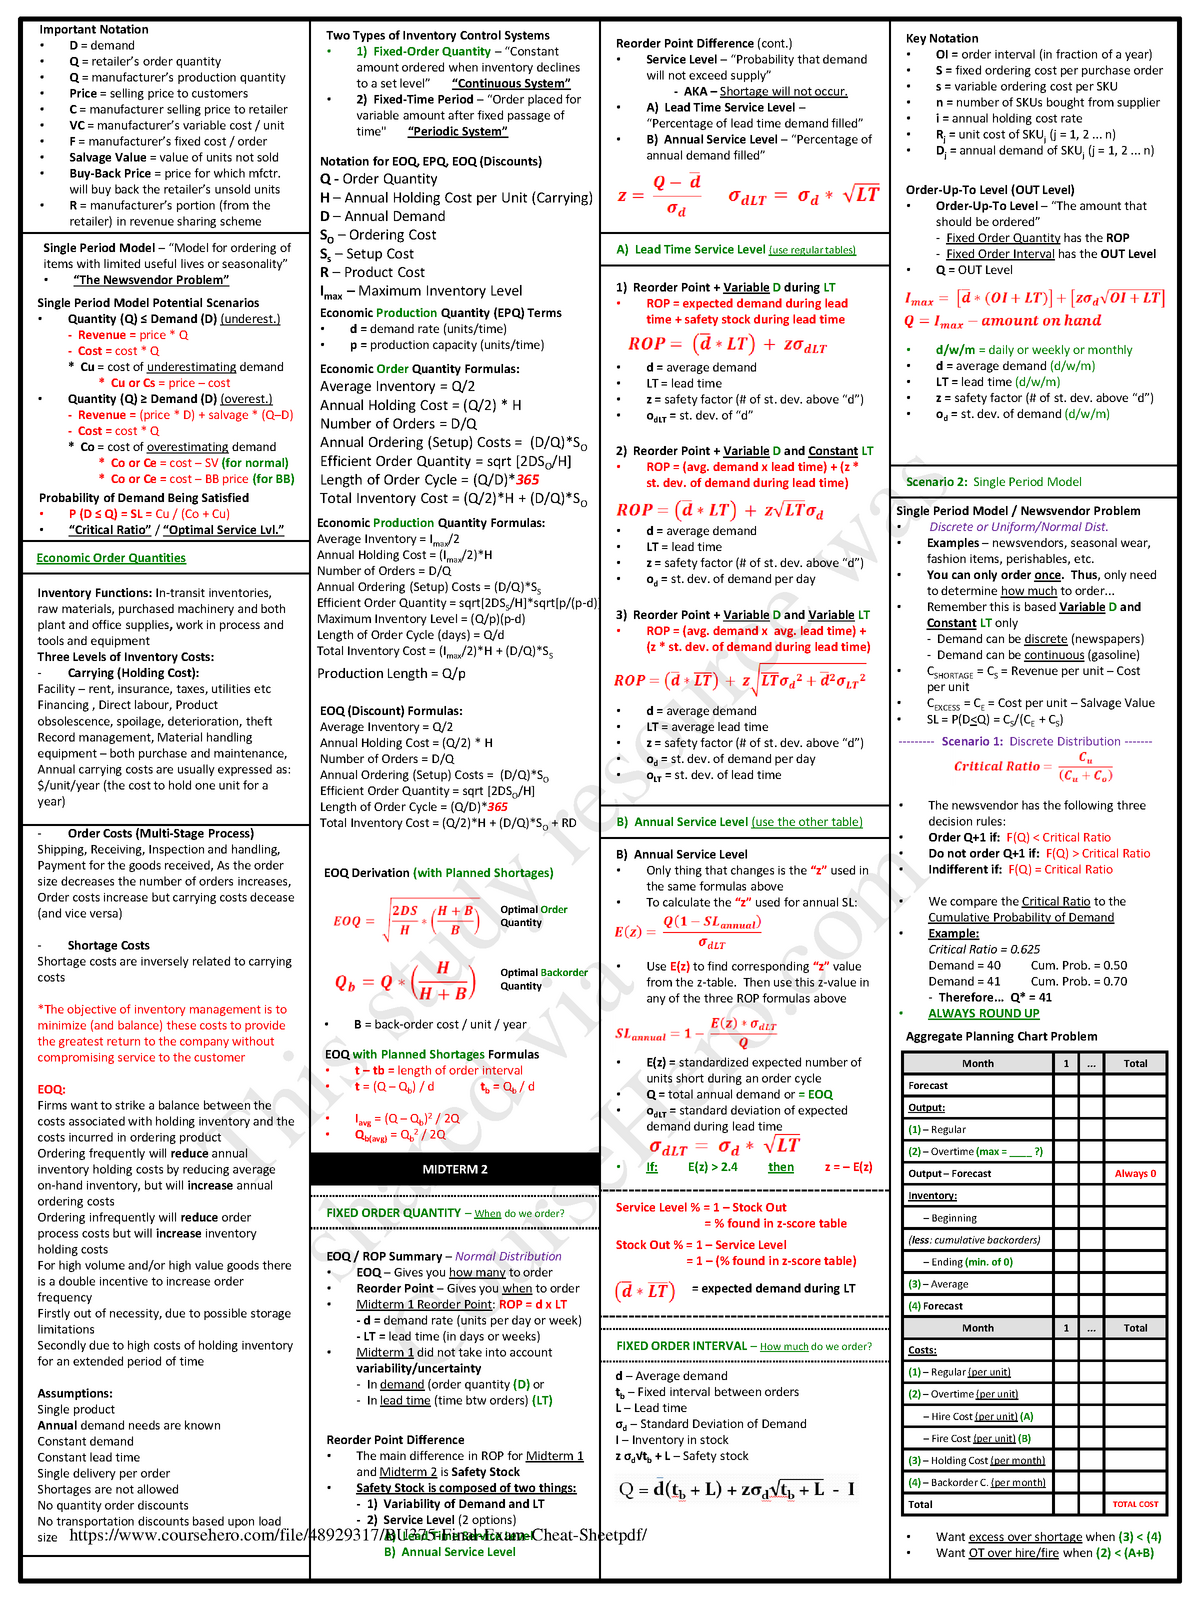 padi exam cheat sheet